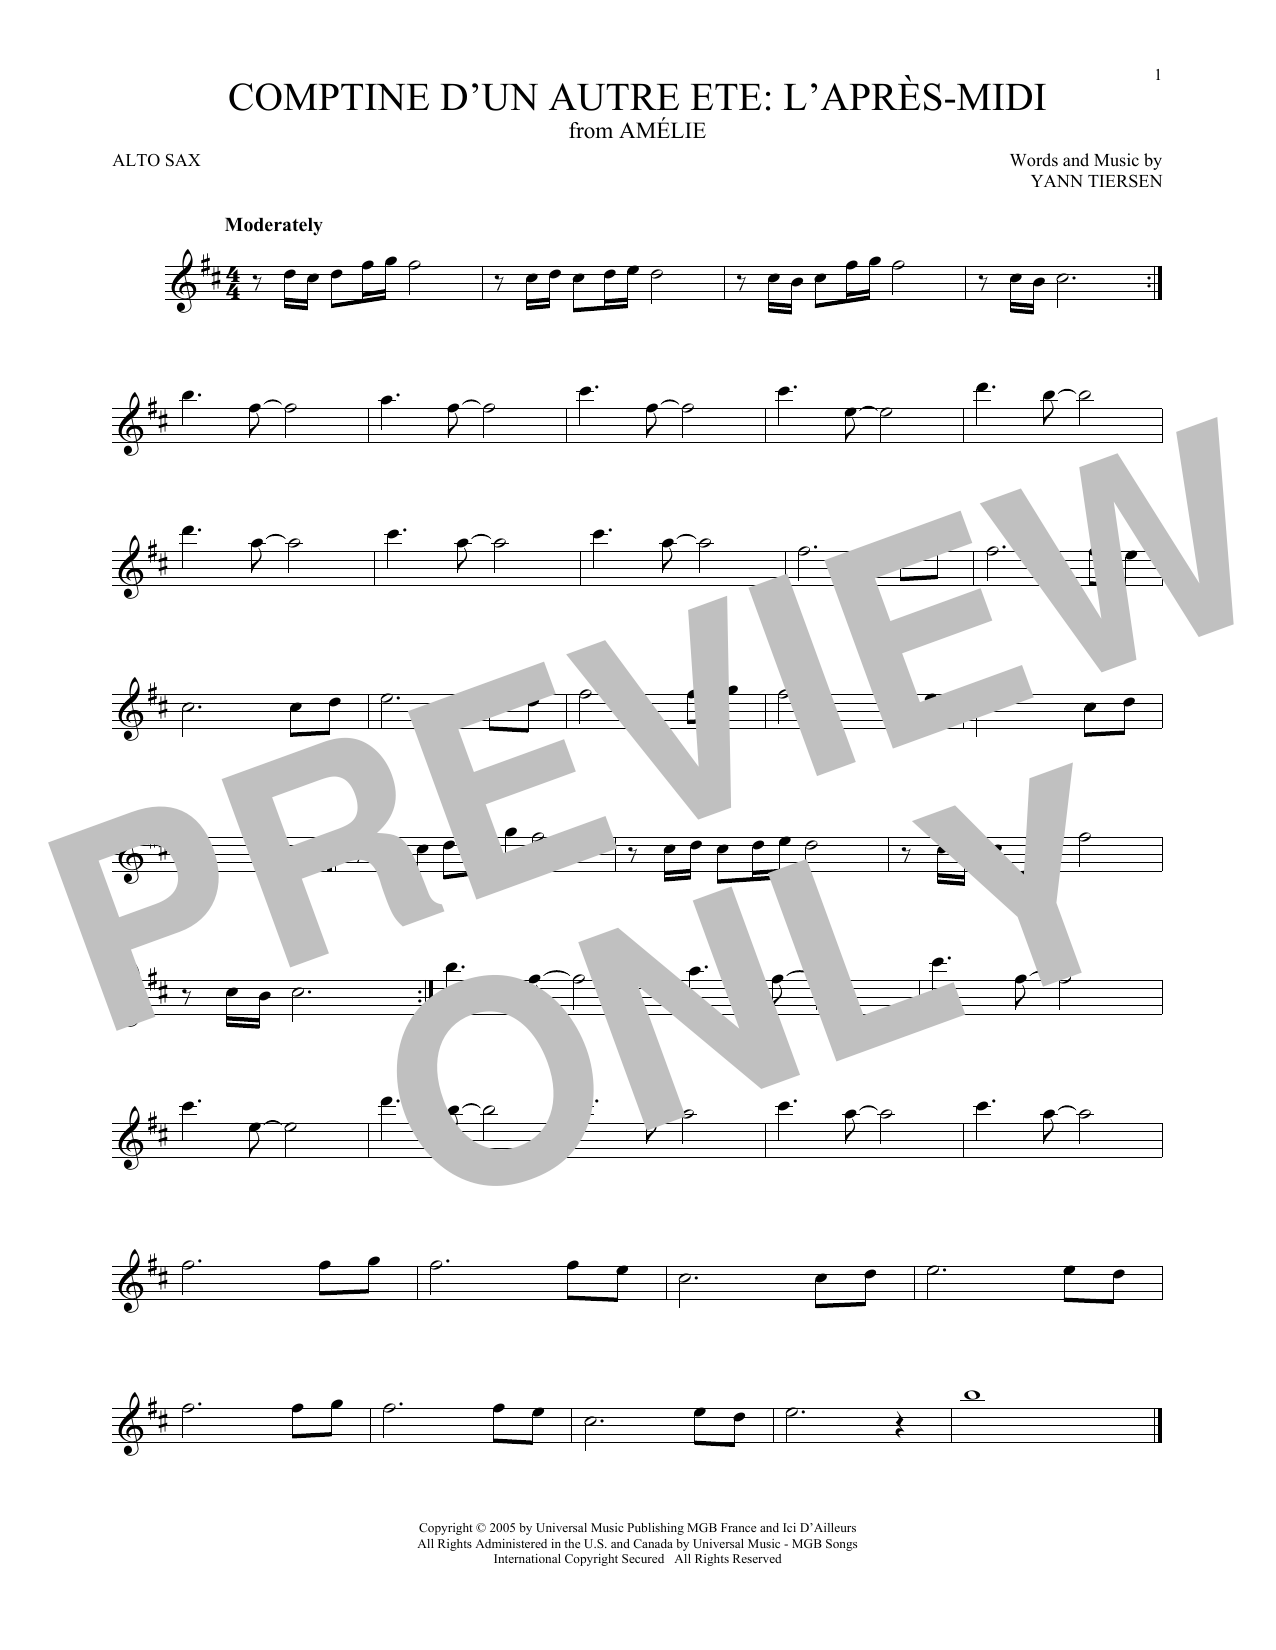 Yann Tiersen Comptine d'un autre été: L'après-midi (from Amelie) Sheet Music Notes & Chords for Viola Solo - Download or Print PDF